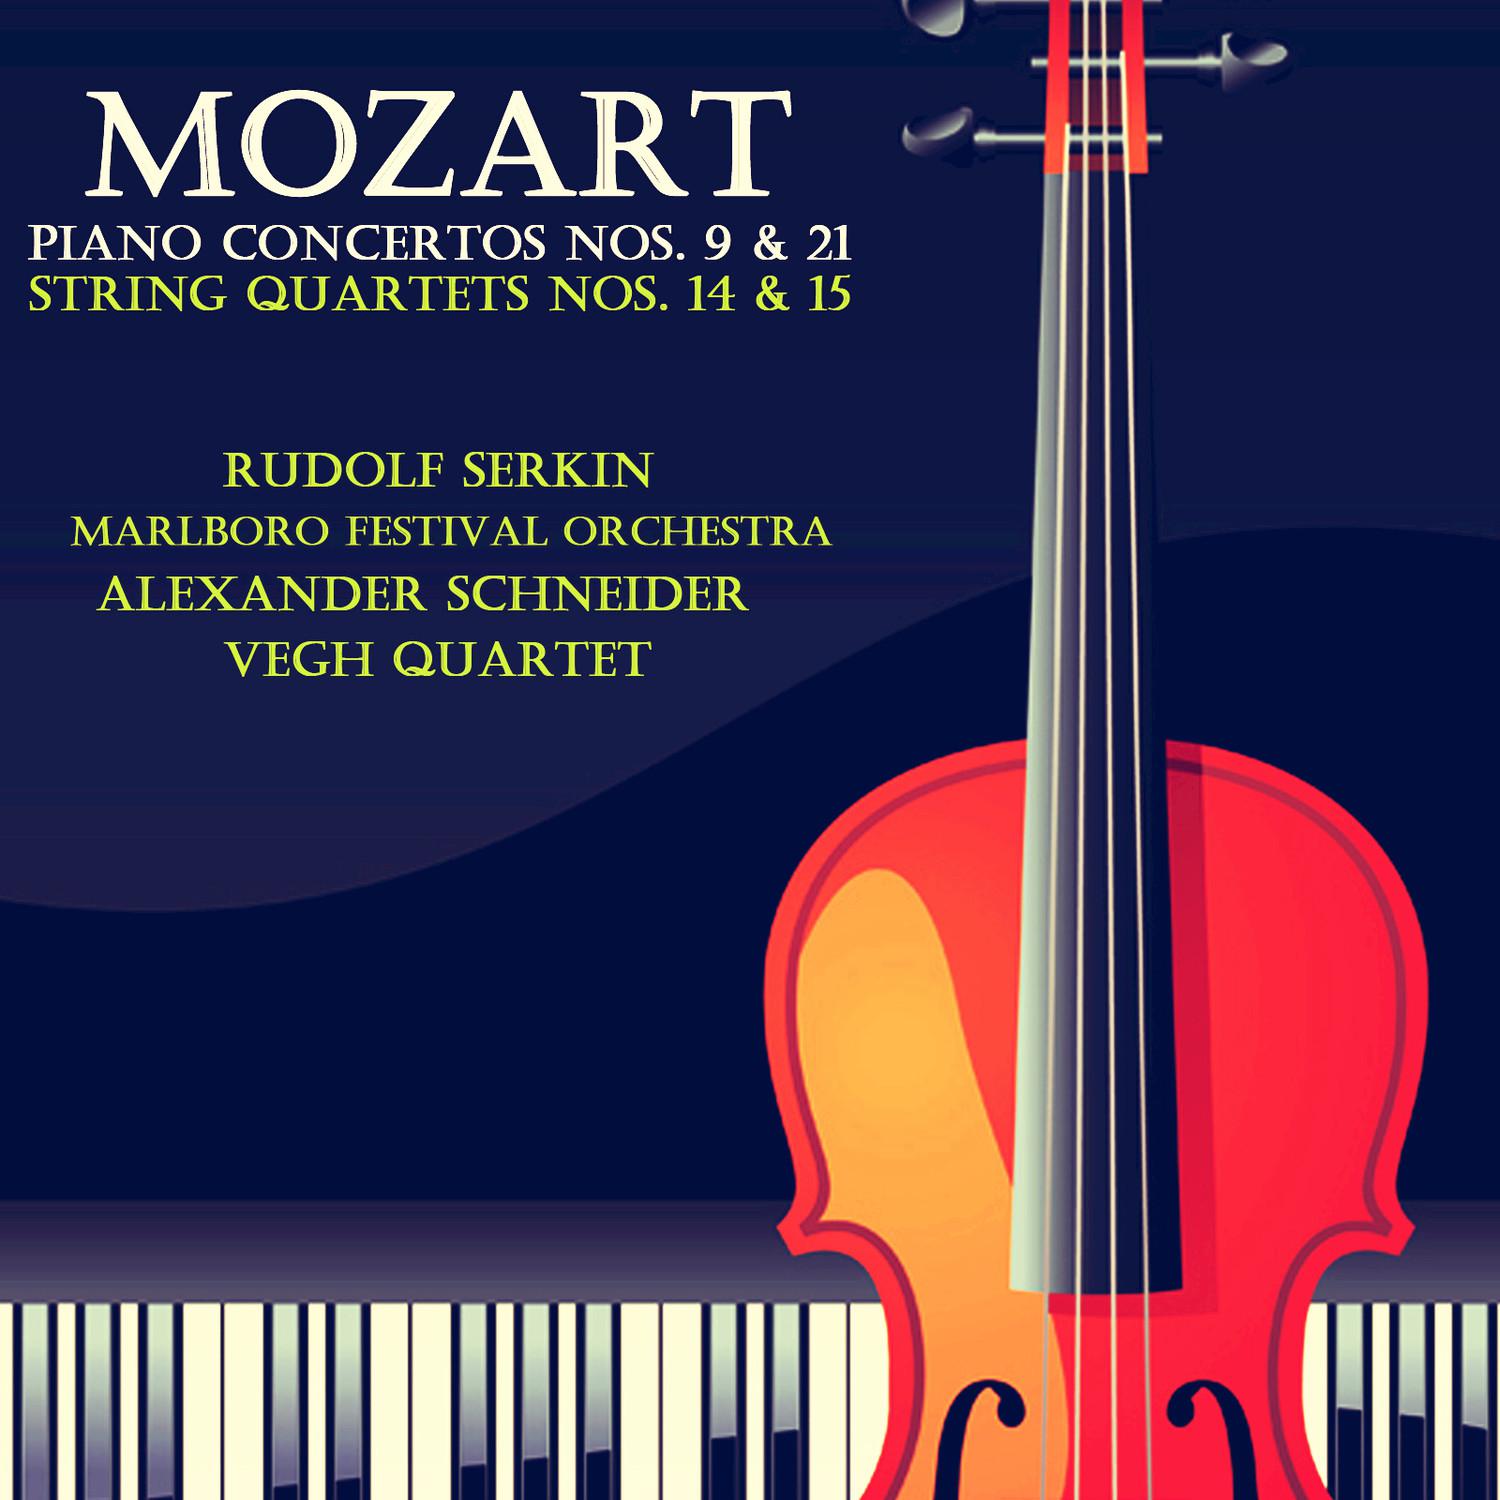 Mozart Piano Concertos Nos. 9 & 21 & String Quartets Nos. 14 & 15